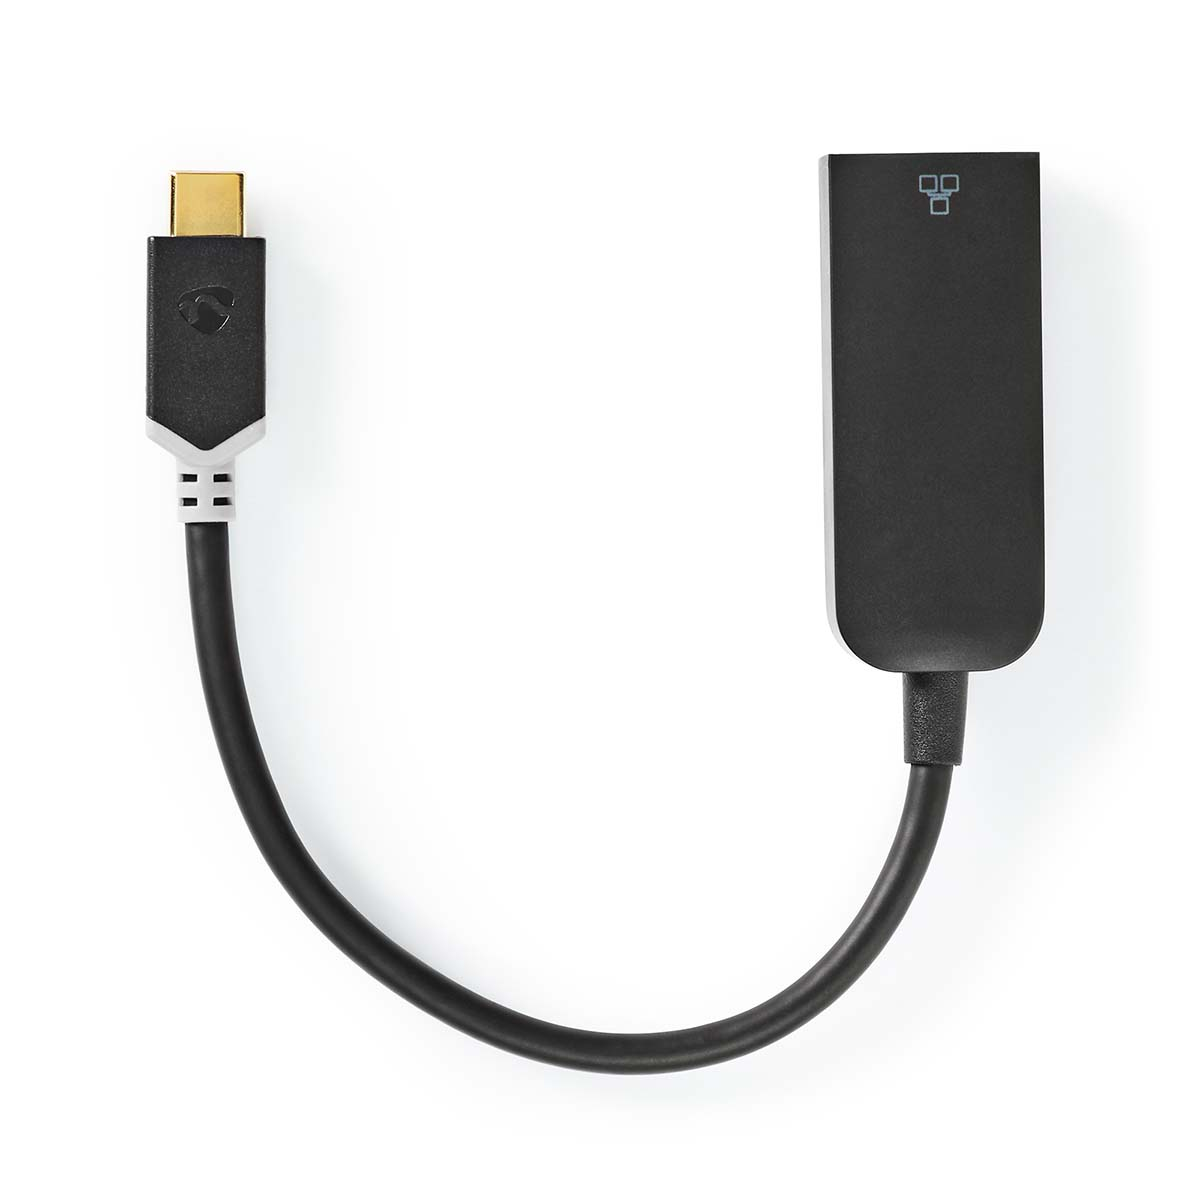 CCBW64952AT02, NEDIS USB-Netzwerkadapter